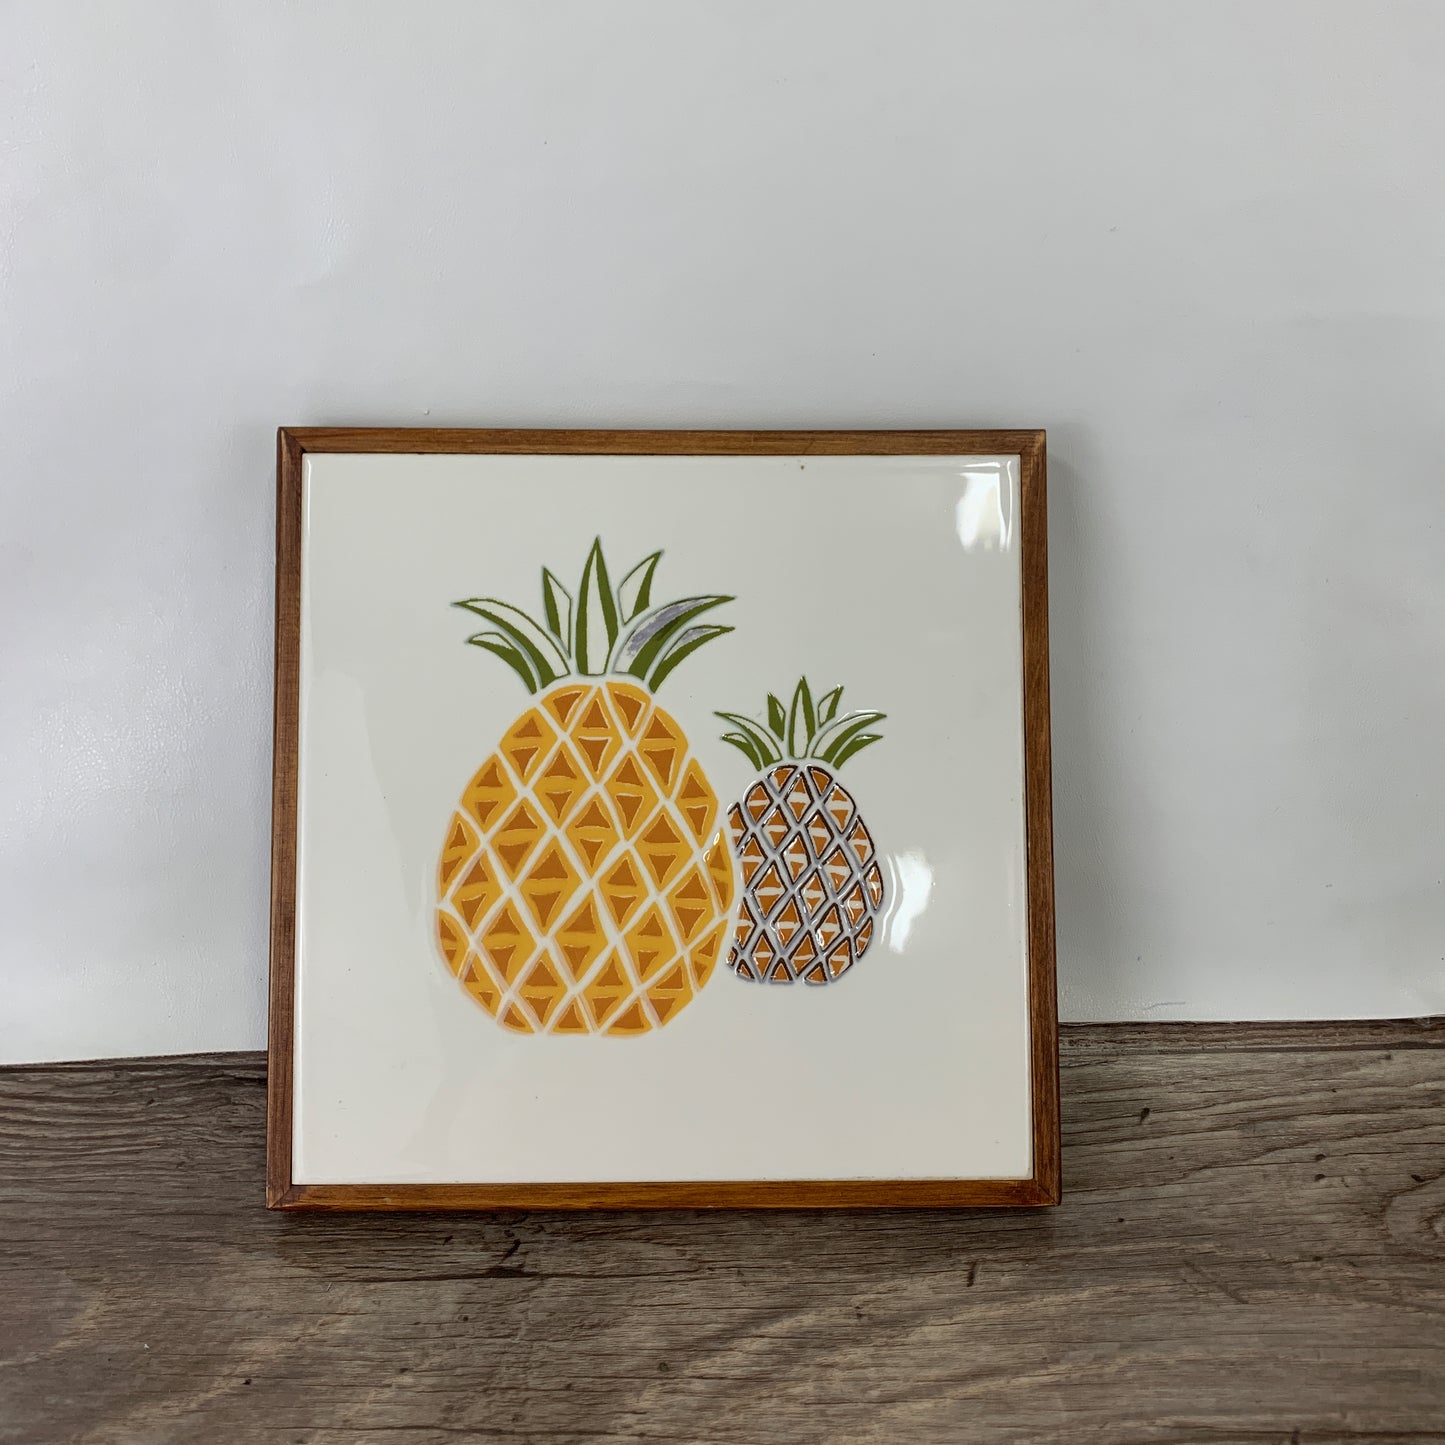 Vintage Ceramic Tile Trivet with Pineapples, Wood Frame Hot Plate